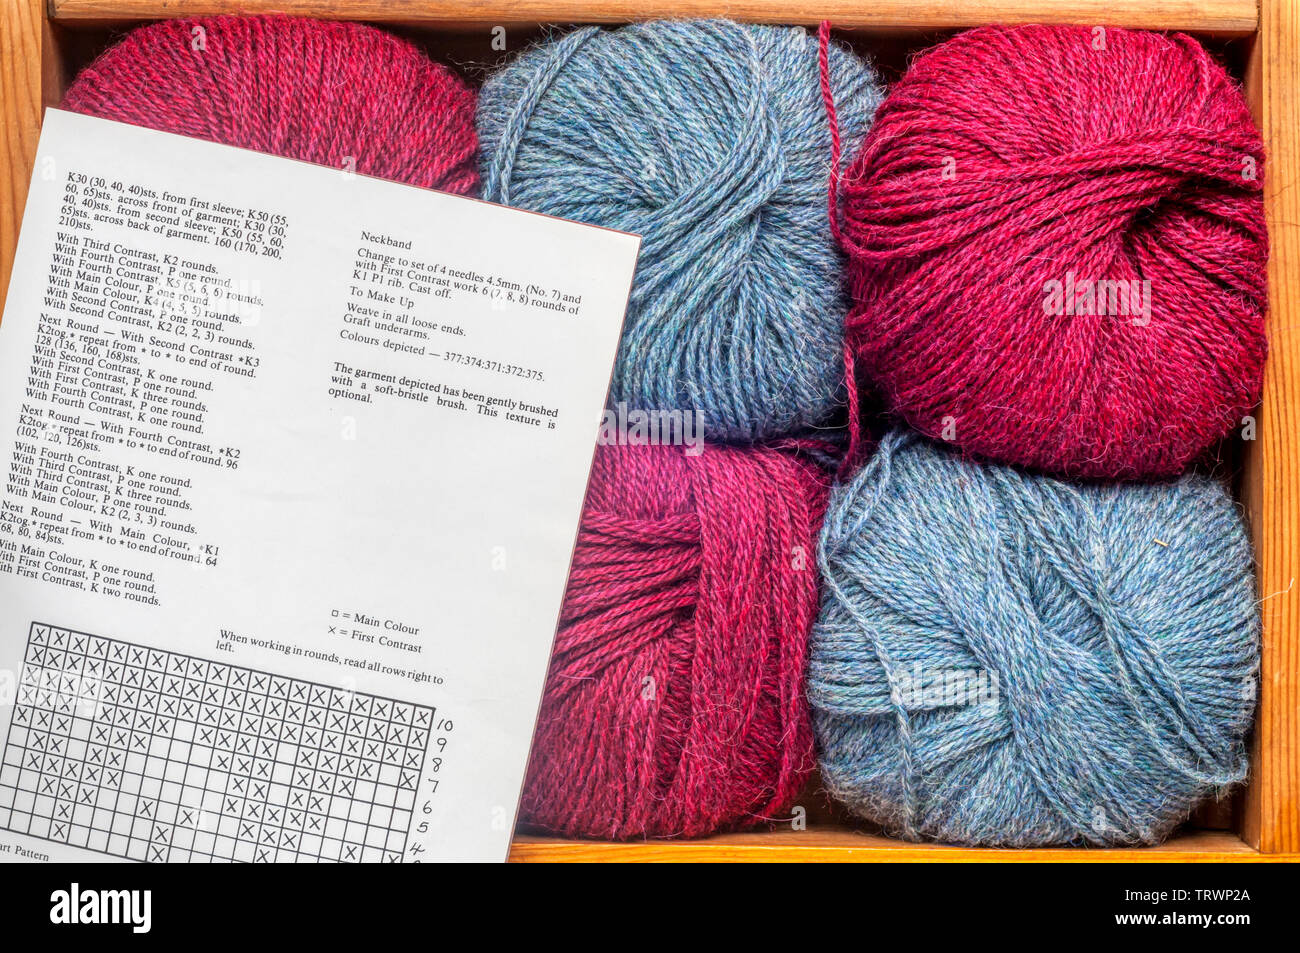 Bolas de lana para tejer guardado en un cajón, junto con un patrón de tejer. Foto de stock